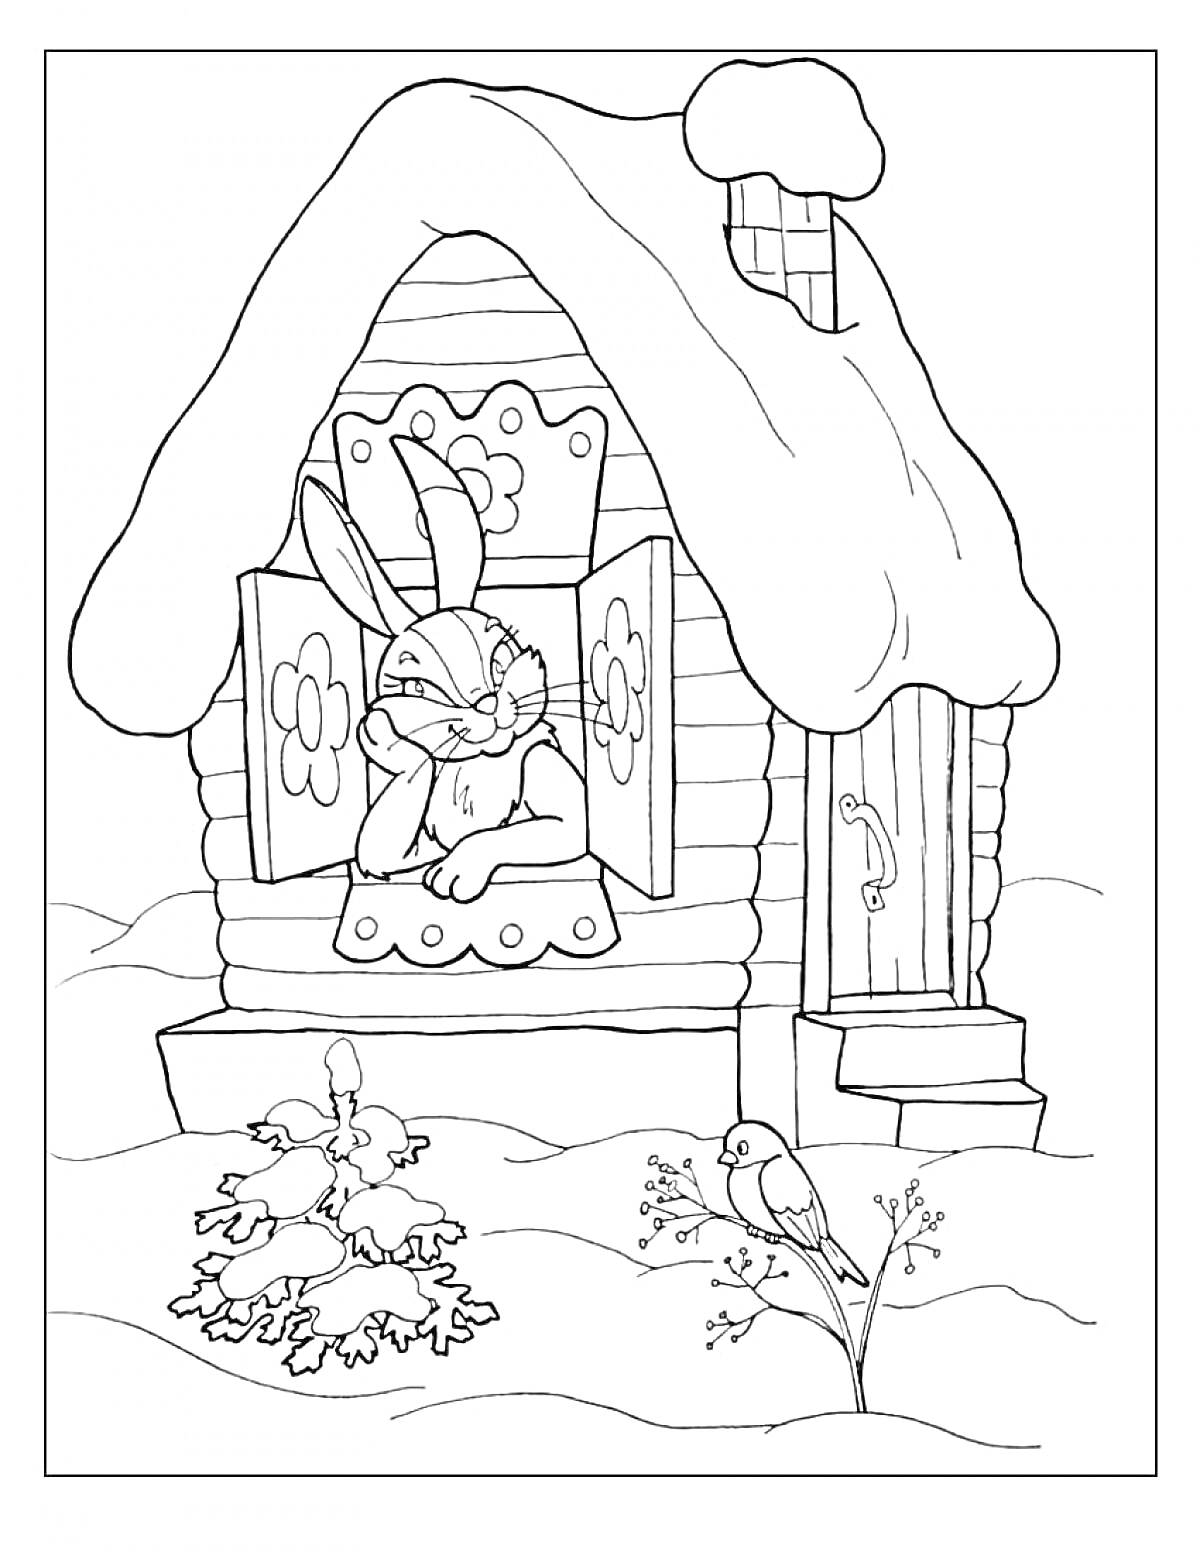 Раскраска Заяц в окошке заснеженного домика с елкой и птицей во дворе